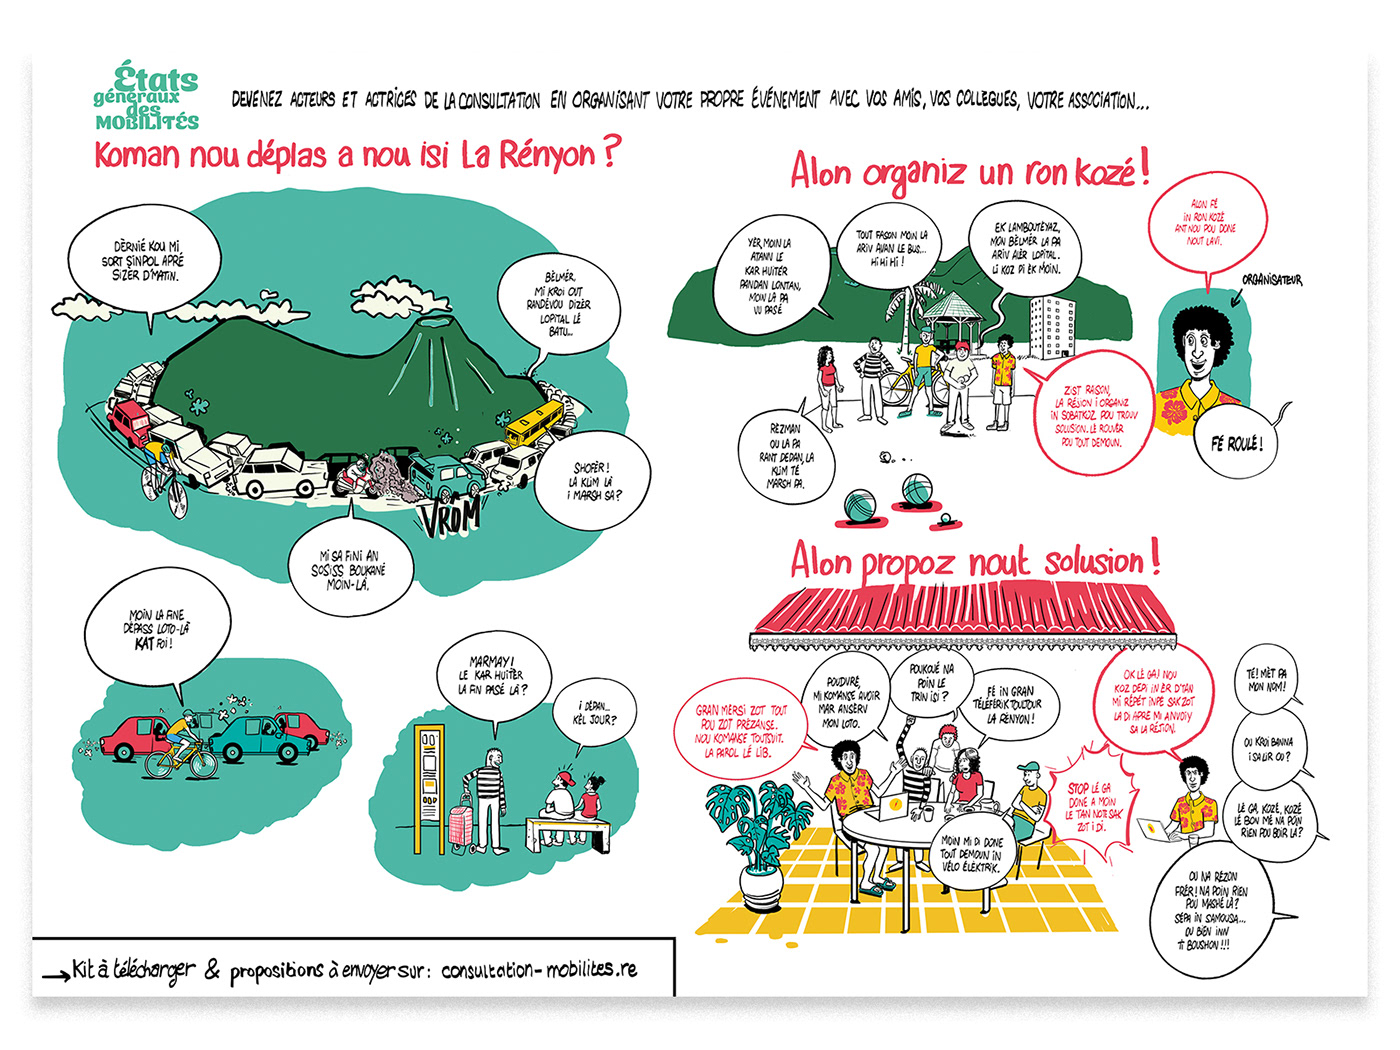 bande dessinée comic artwork projet regional la réunion reunion island Transport en commun bus